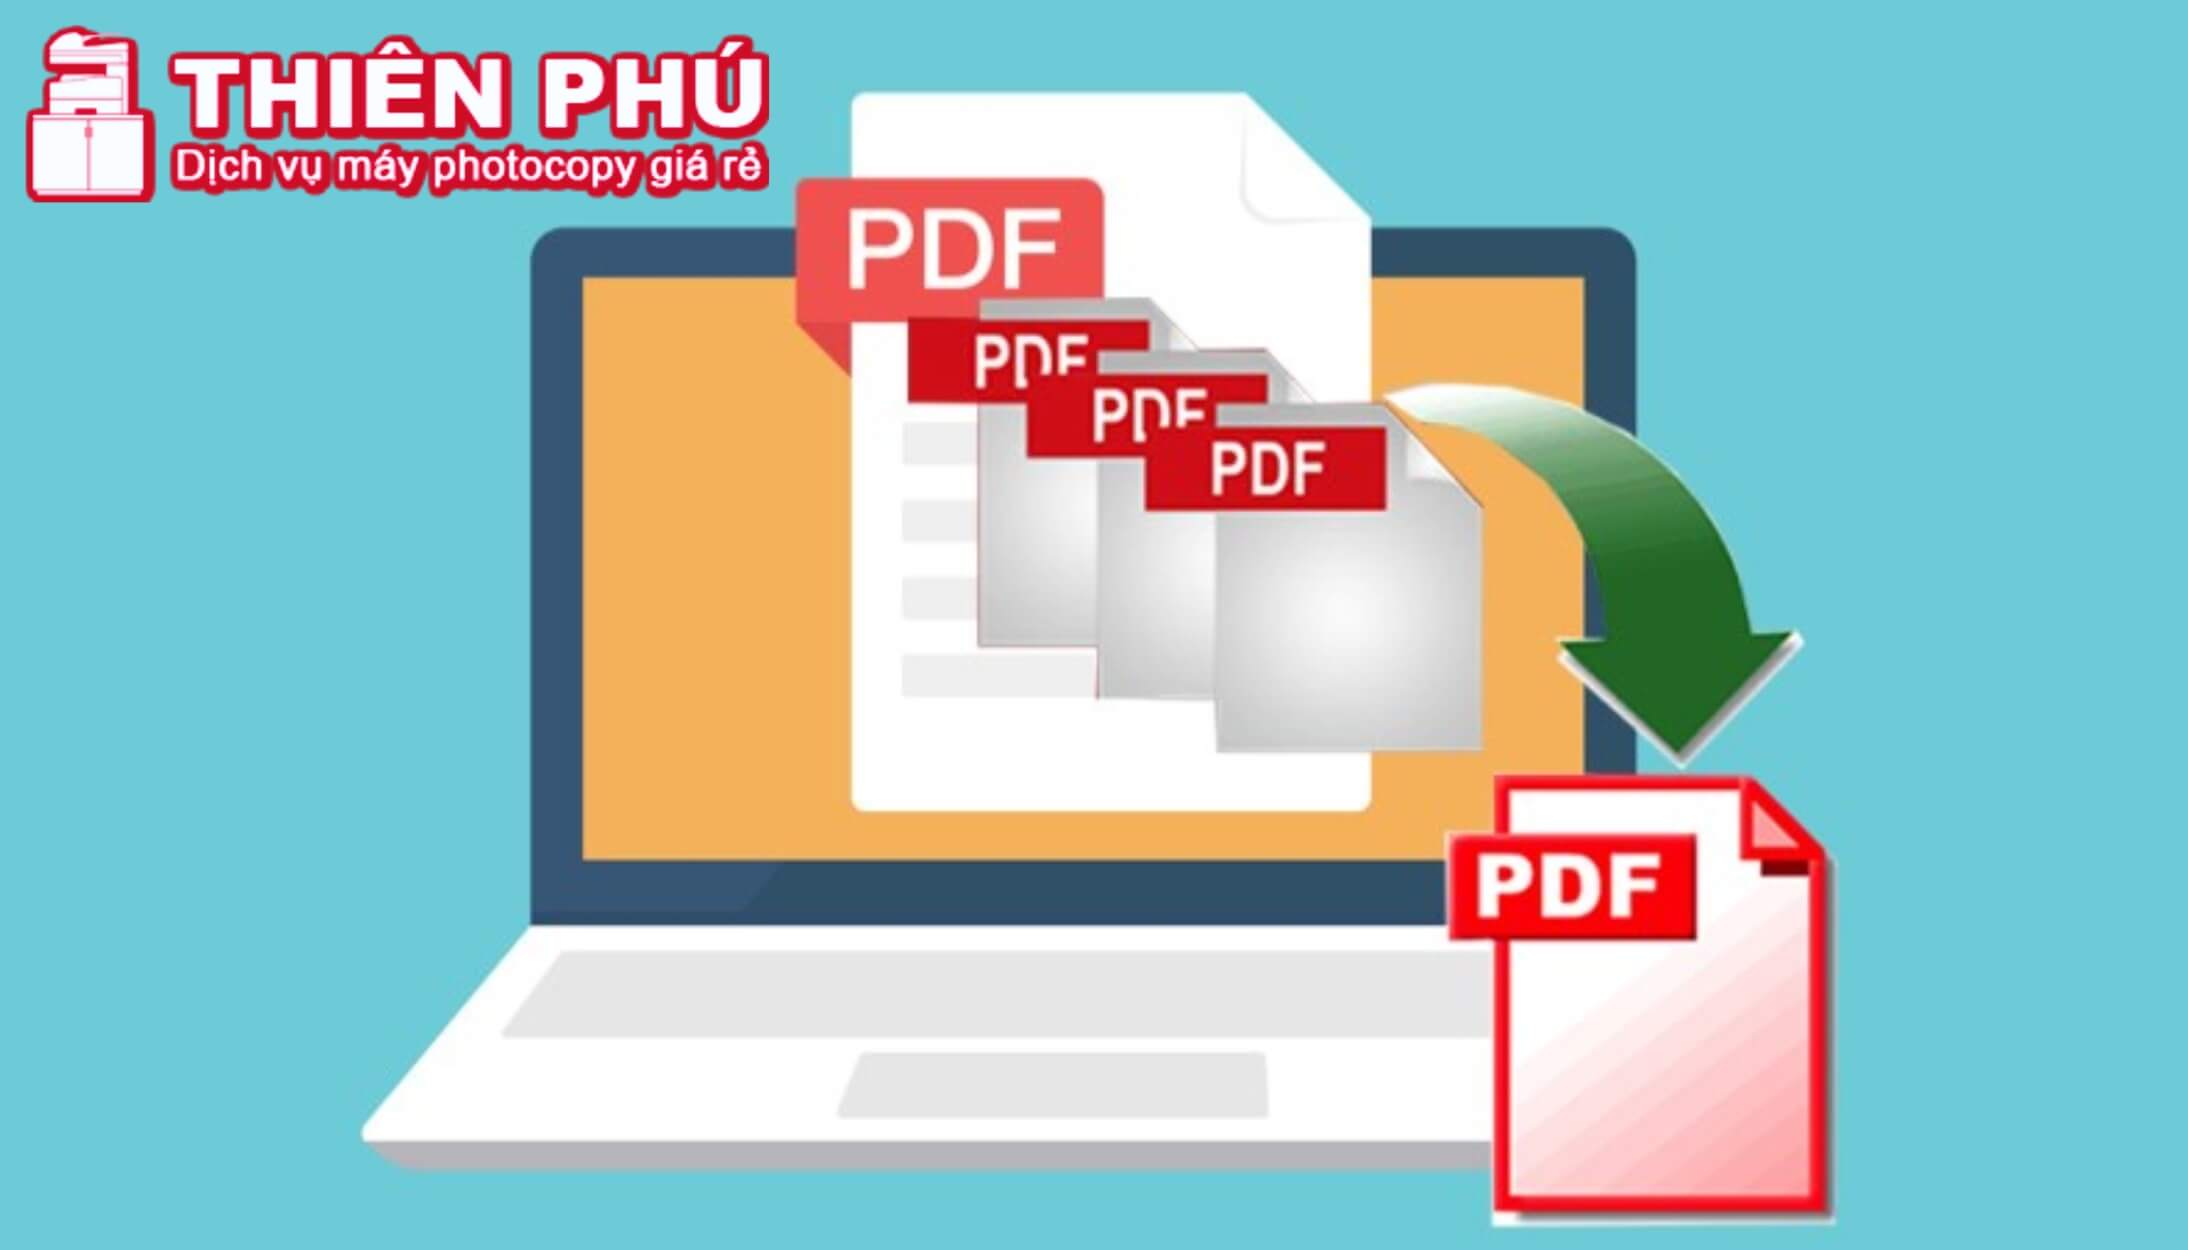 Một số ưu và nhược điểm của file PDF